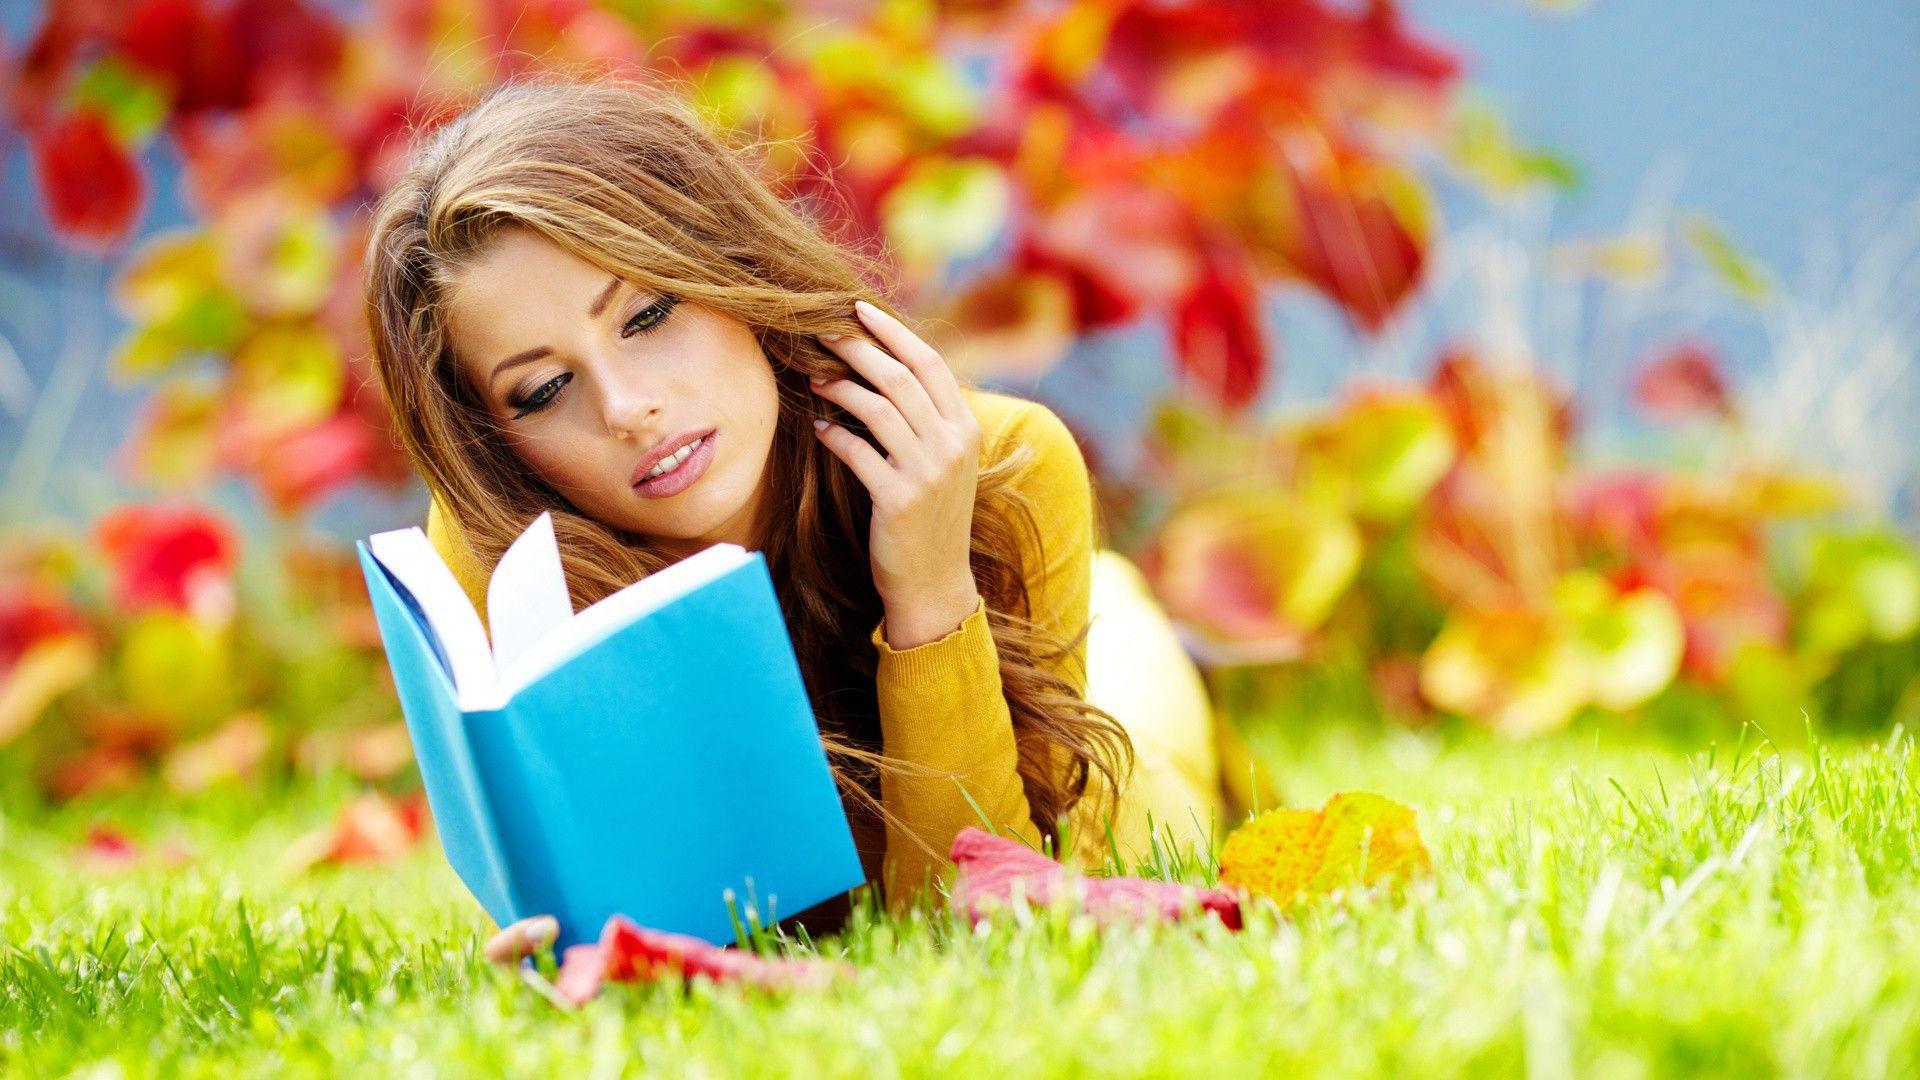 Î‘Ï€Î¿Ï„Î­Î»ÎµÏƒÎ¼Î± ÎµÎ¹ÎºÏŒÎ½Î±Ï‚ Î³Î¹Î± beautiful girl reading a book